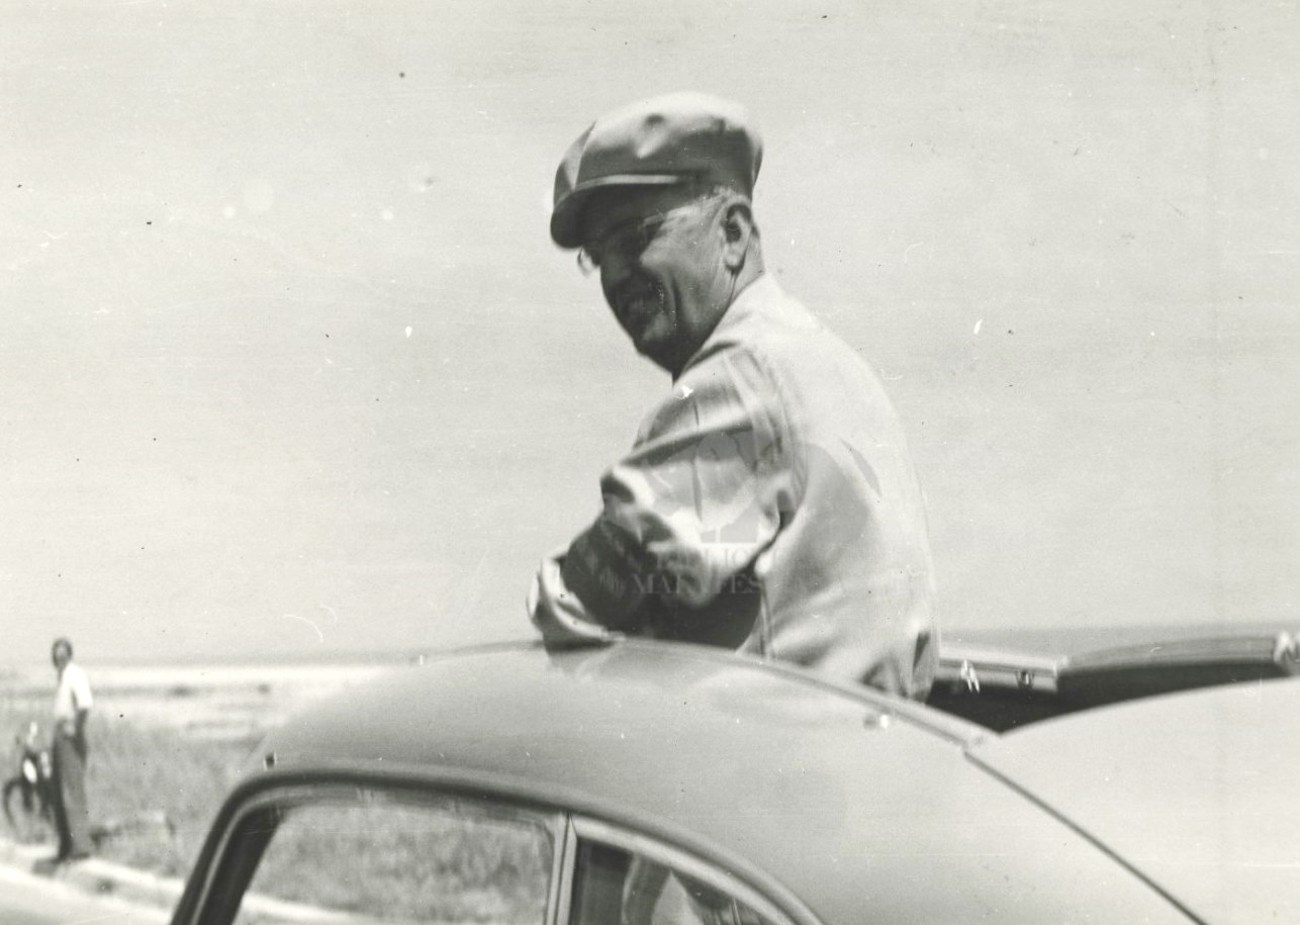 Giuseppe Ambrosini n piedi sull'auto durante una gara 1951-1960 circa. Foto C. Martini